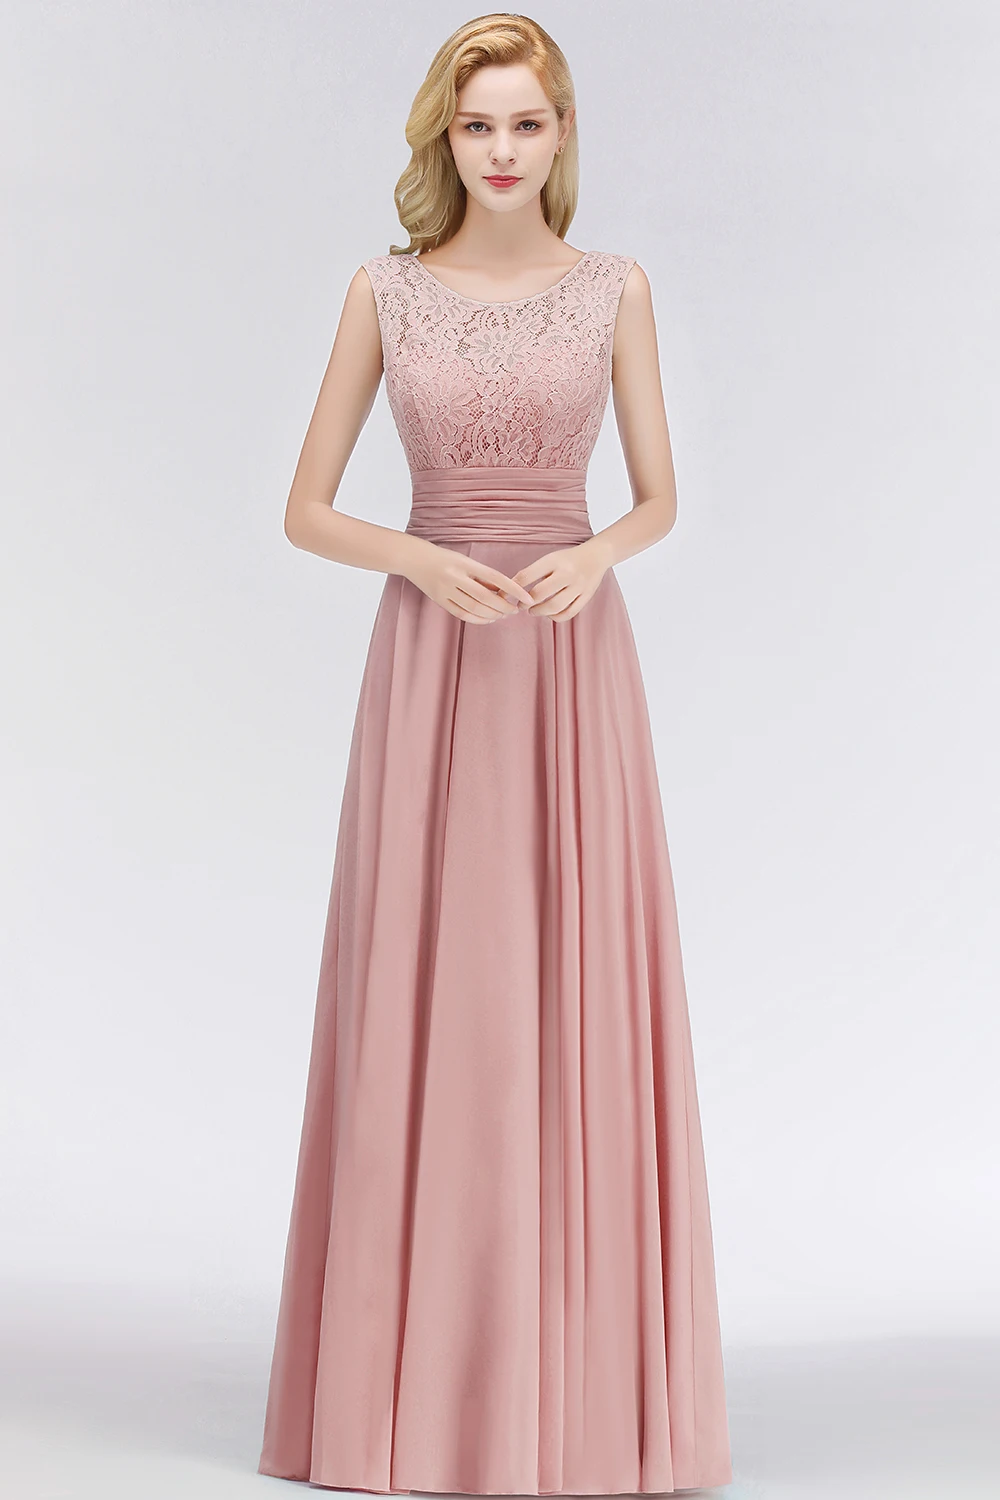 Robe demoiseur d'honneur, ТРАПЕЦИЕВИДНОЕ, пыльно-розовое, кружевное платье подружки невесты, длинное, шифоновое свадебное платье подружки невесты